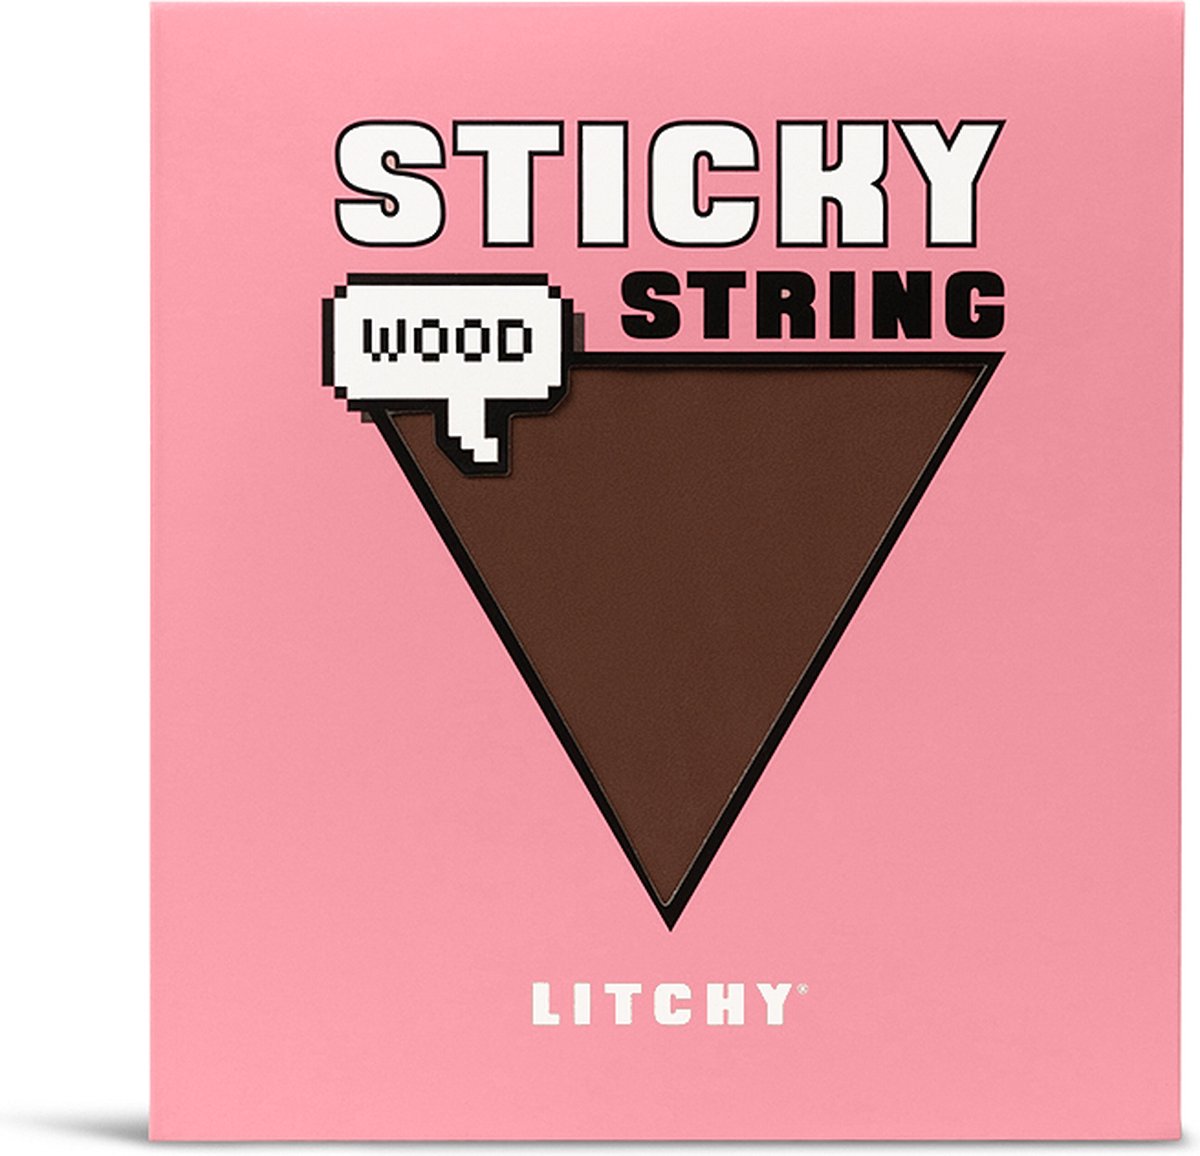 LITCHY Sticky String - Wood